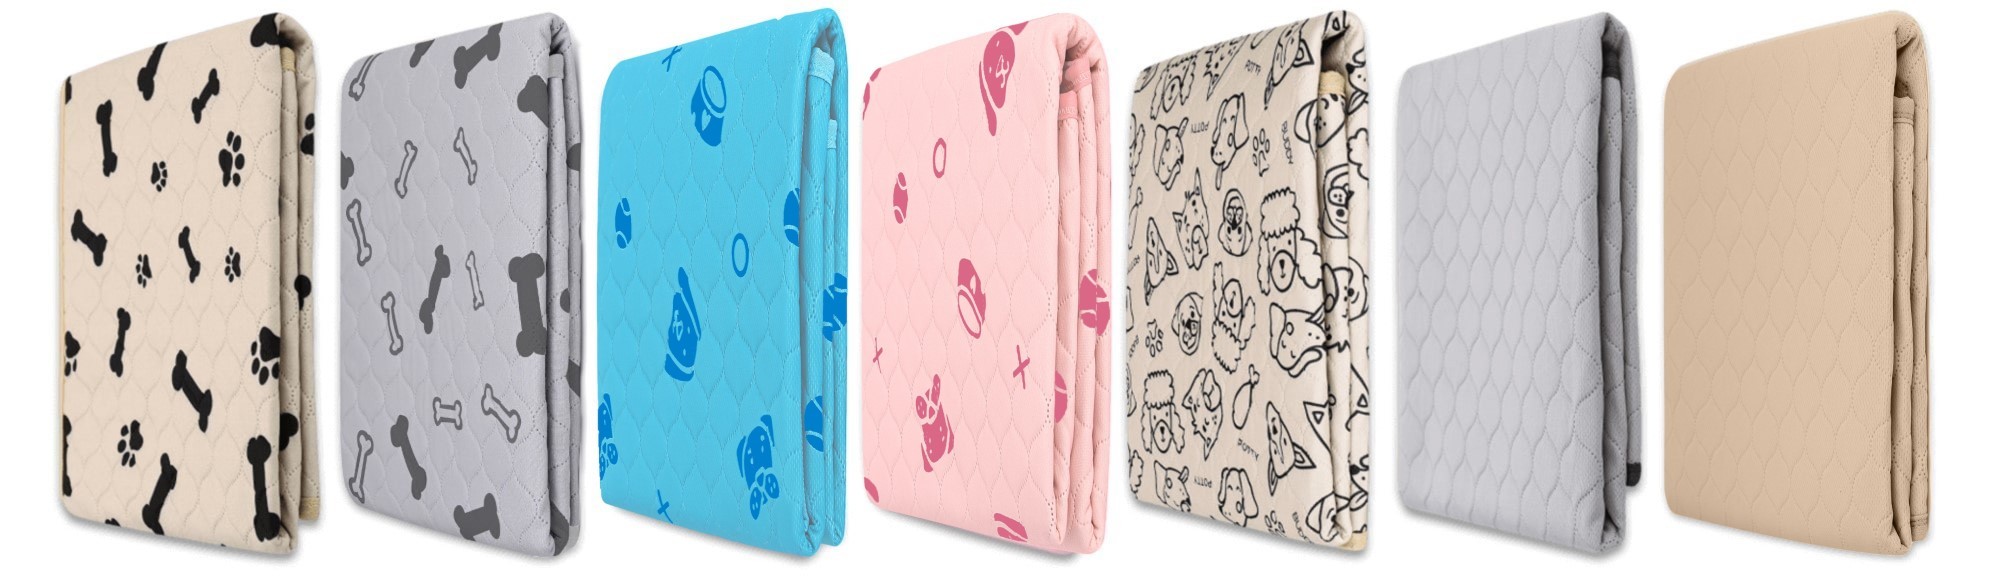 A row of folded Potty Buddy reusable potty pads